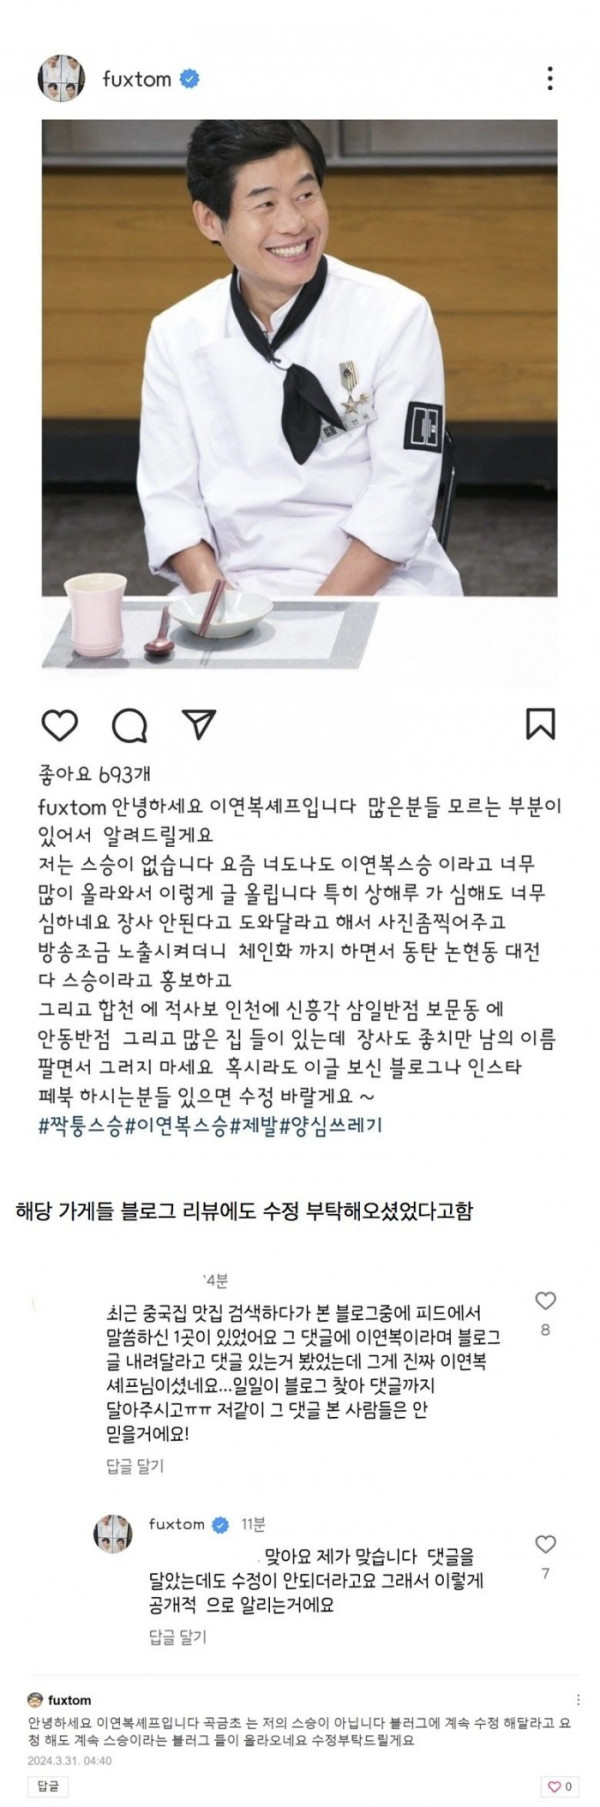 본인 인스타그램에 자칭 스승들 박제한 이연복 쉐프